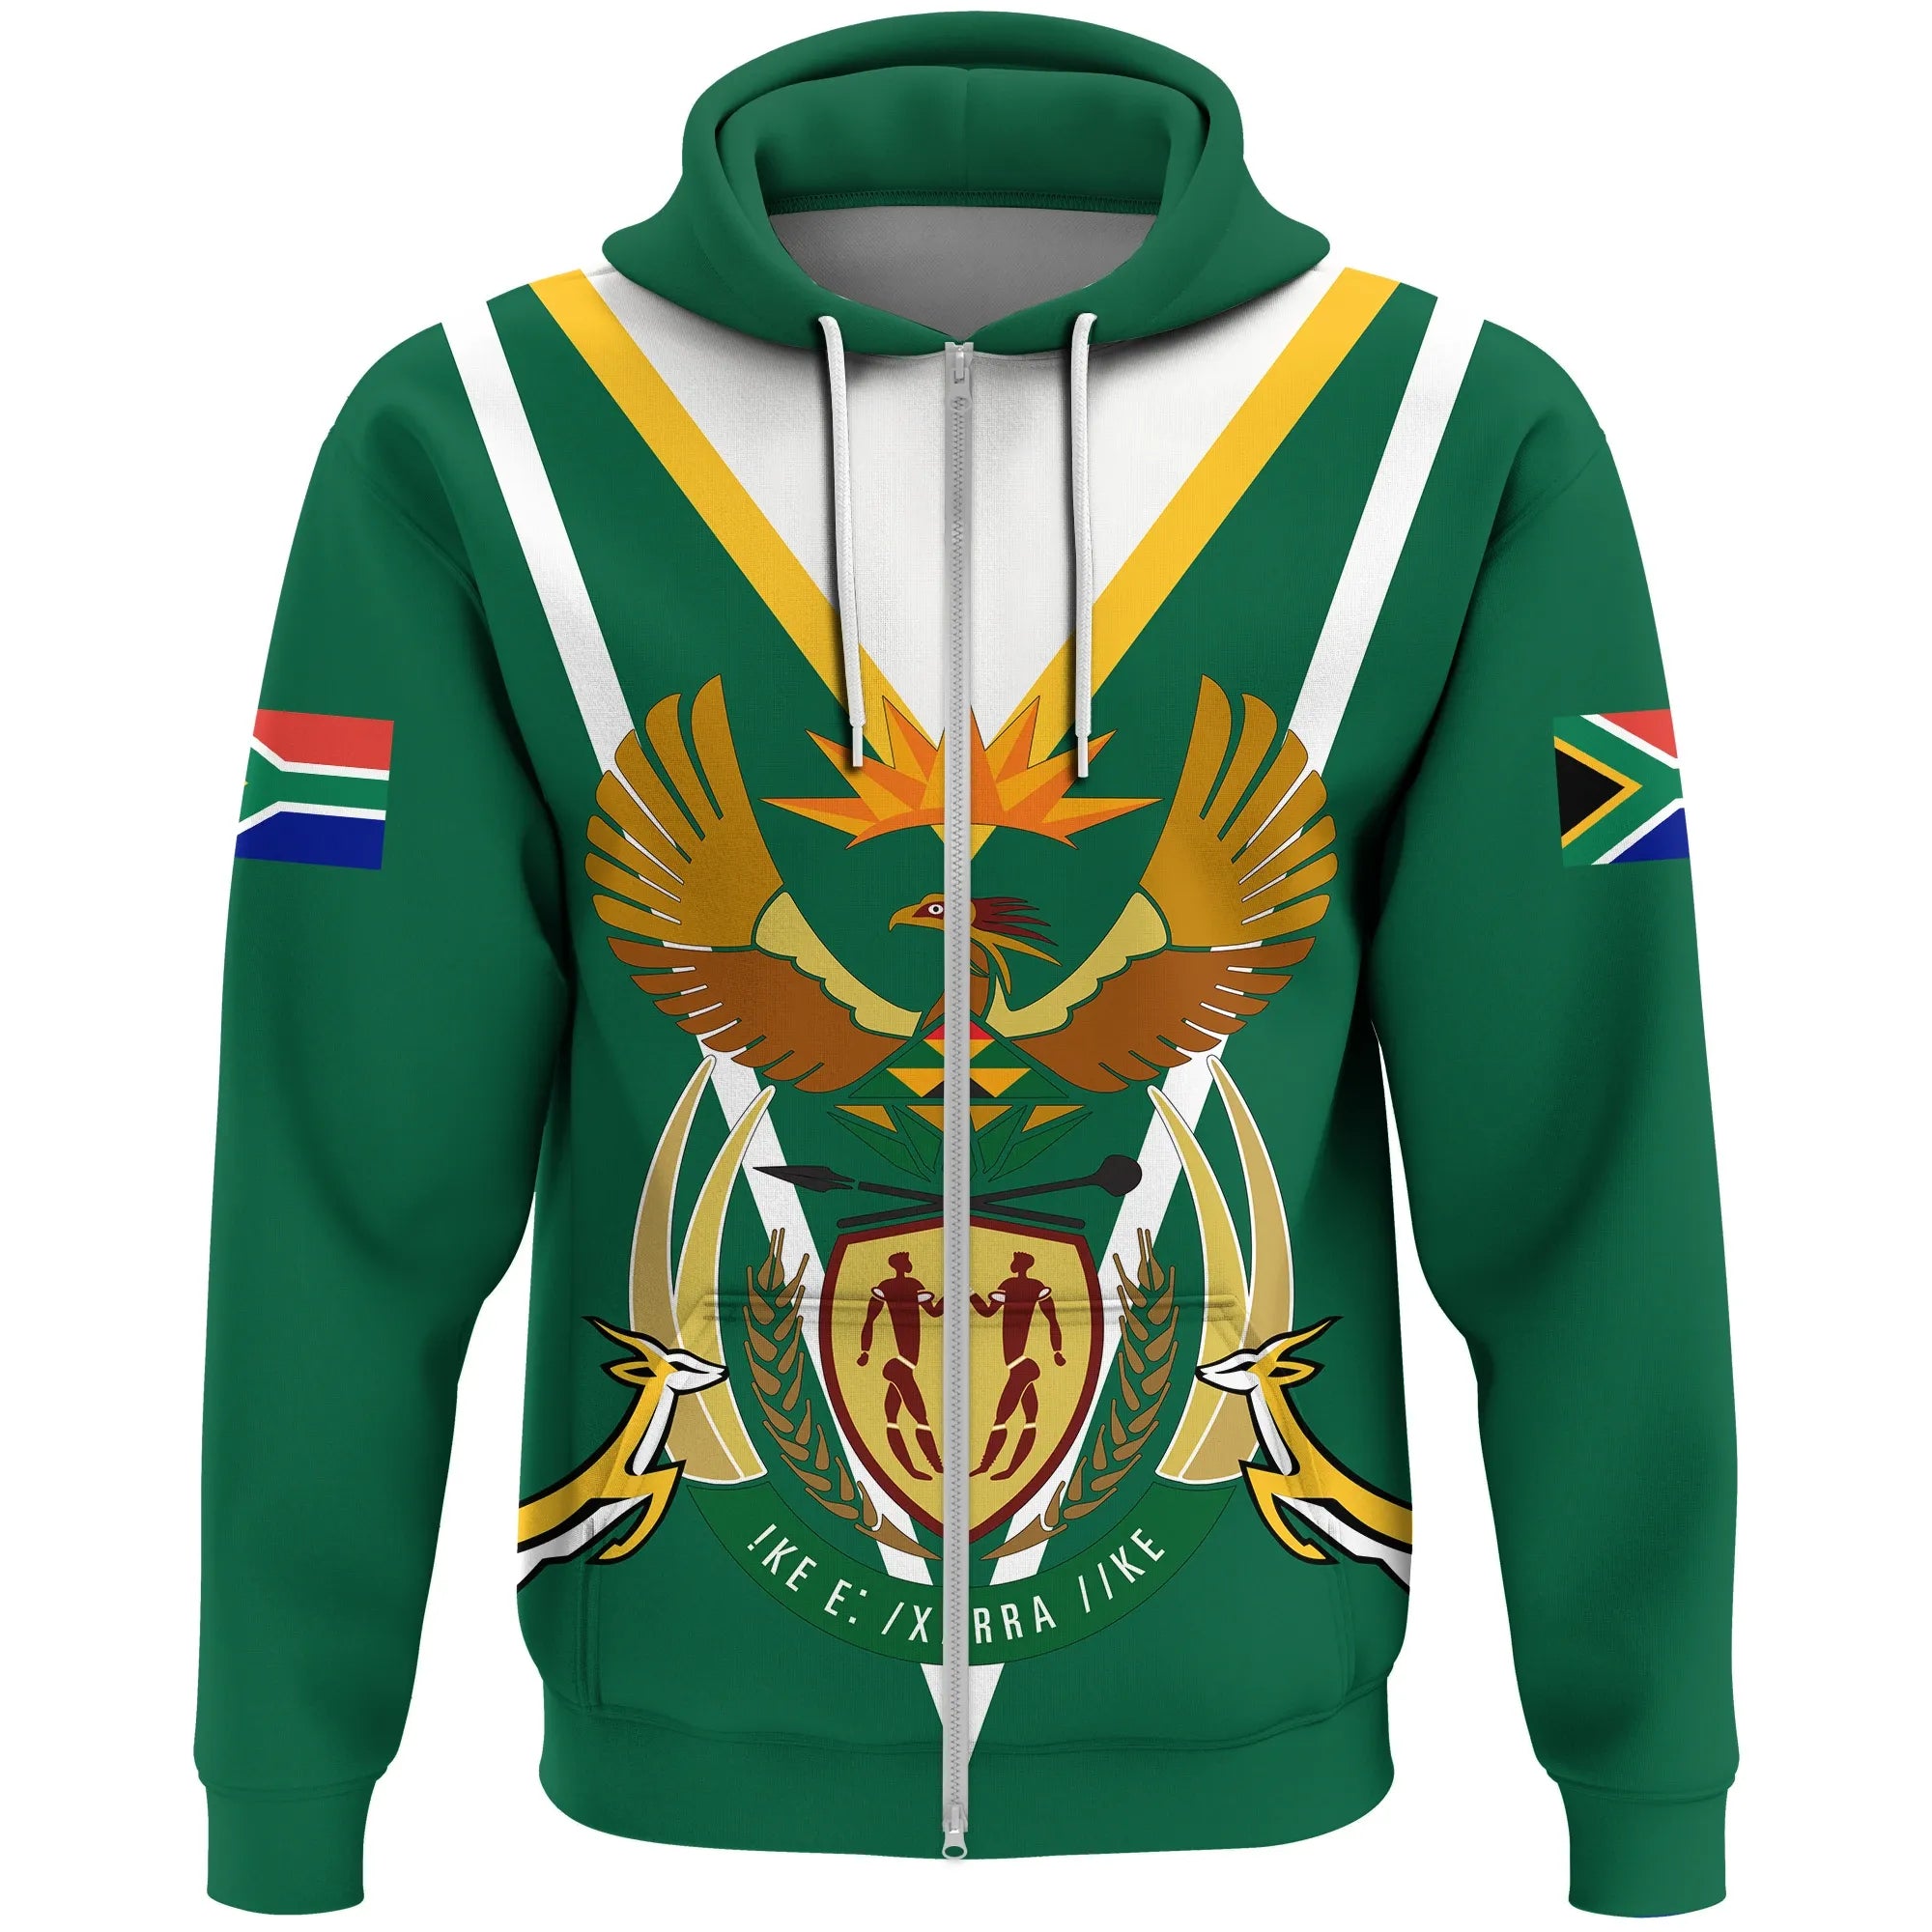 South Africa Zip Hoodie - Coat Of Arms Zip Hoodie